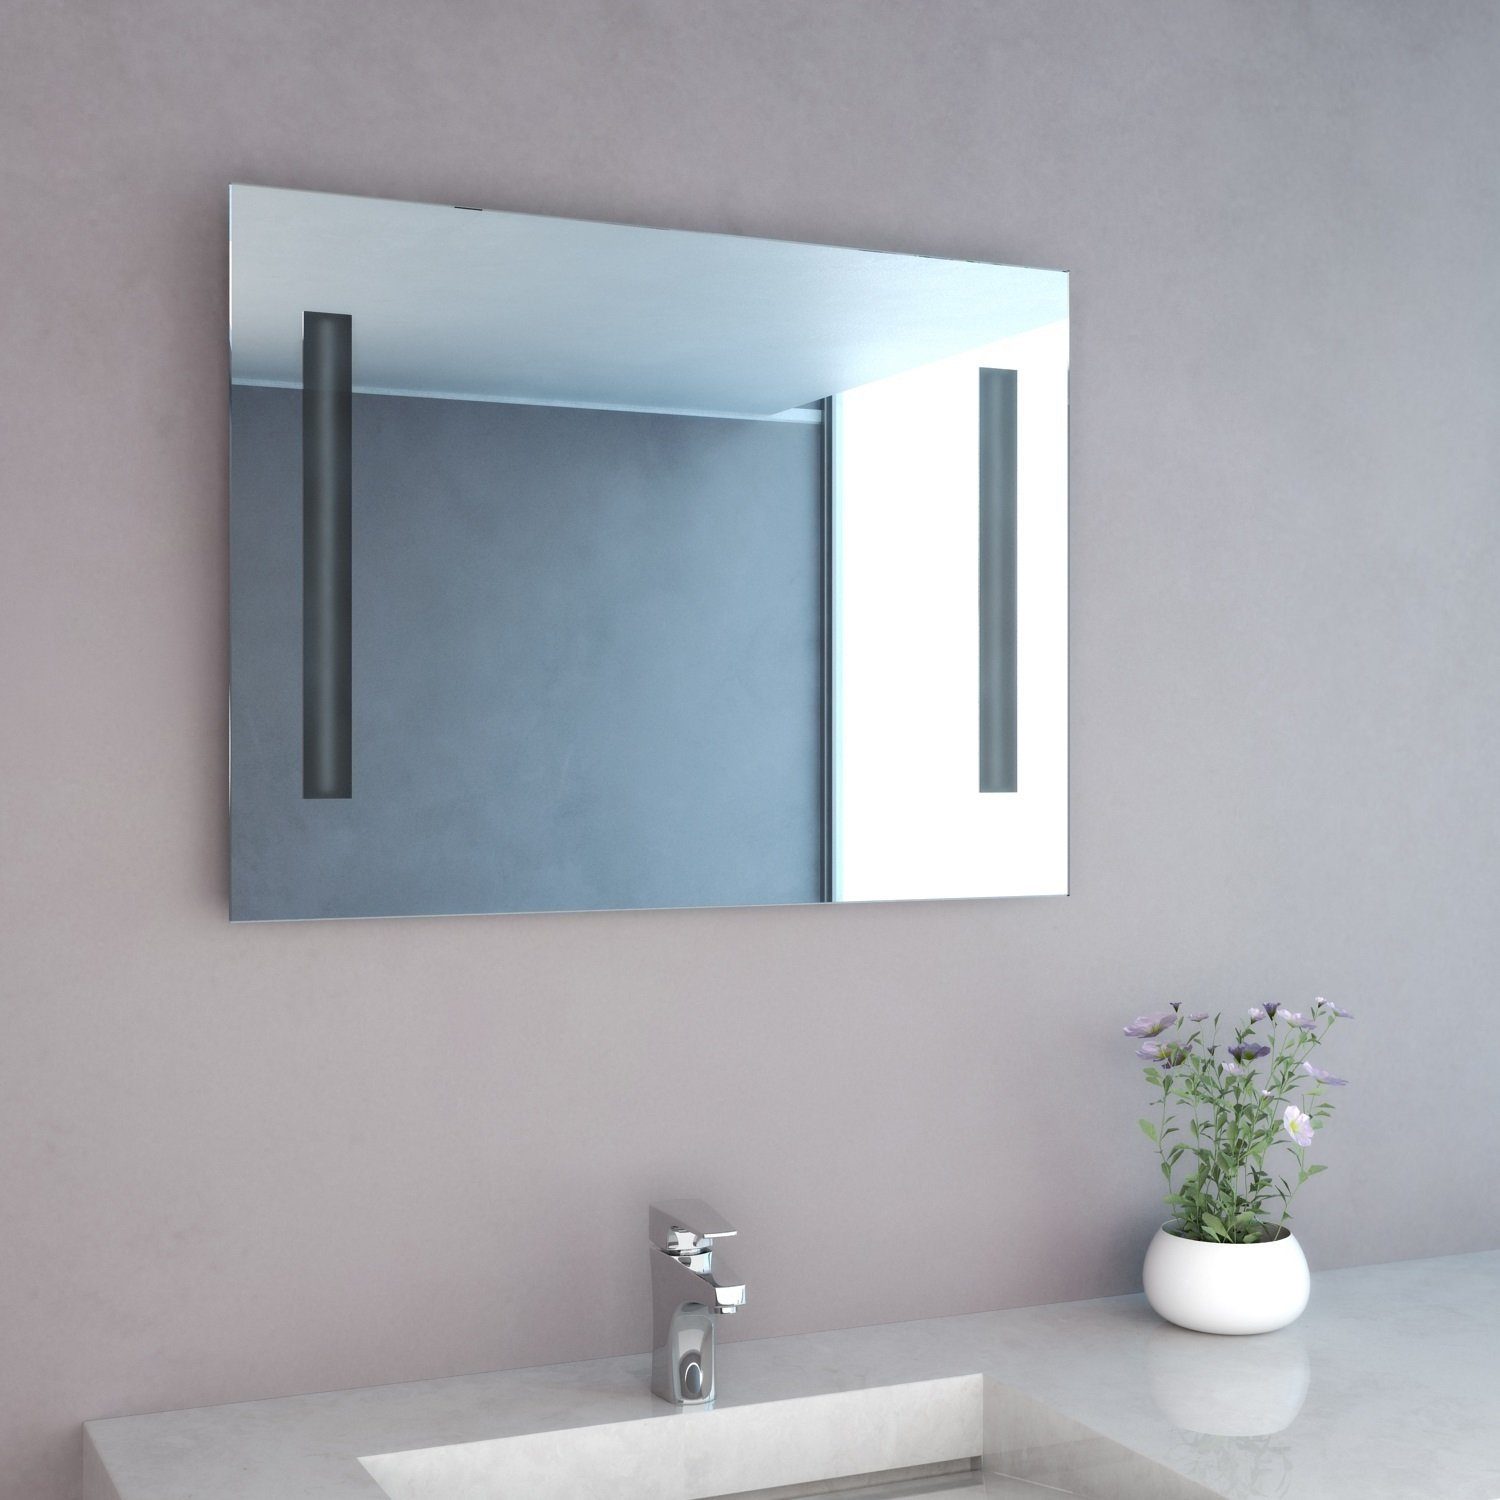 Bad-Spiegel mit energiesparender Badspiegel Mitra NEG NEG LED-Bel